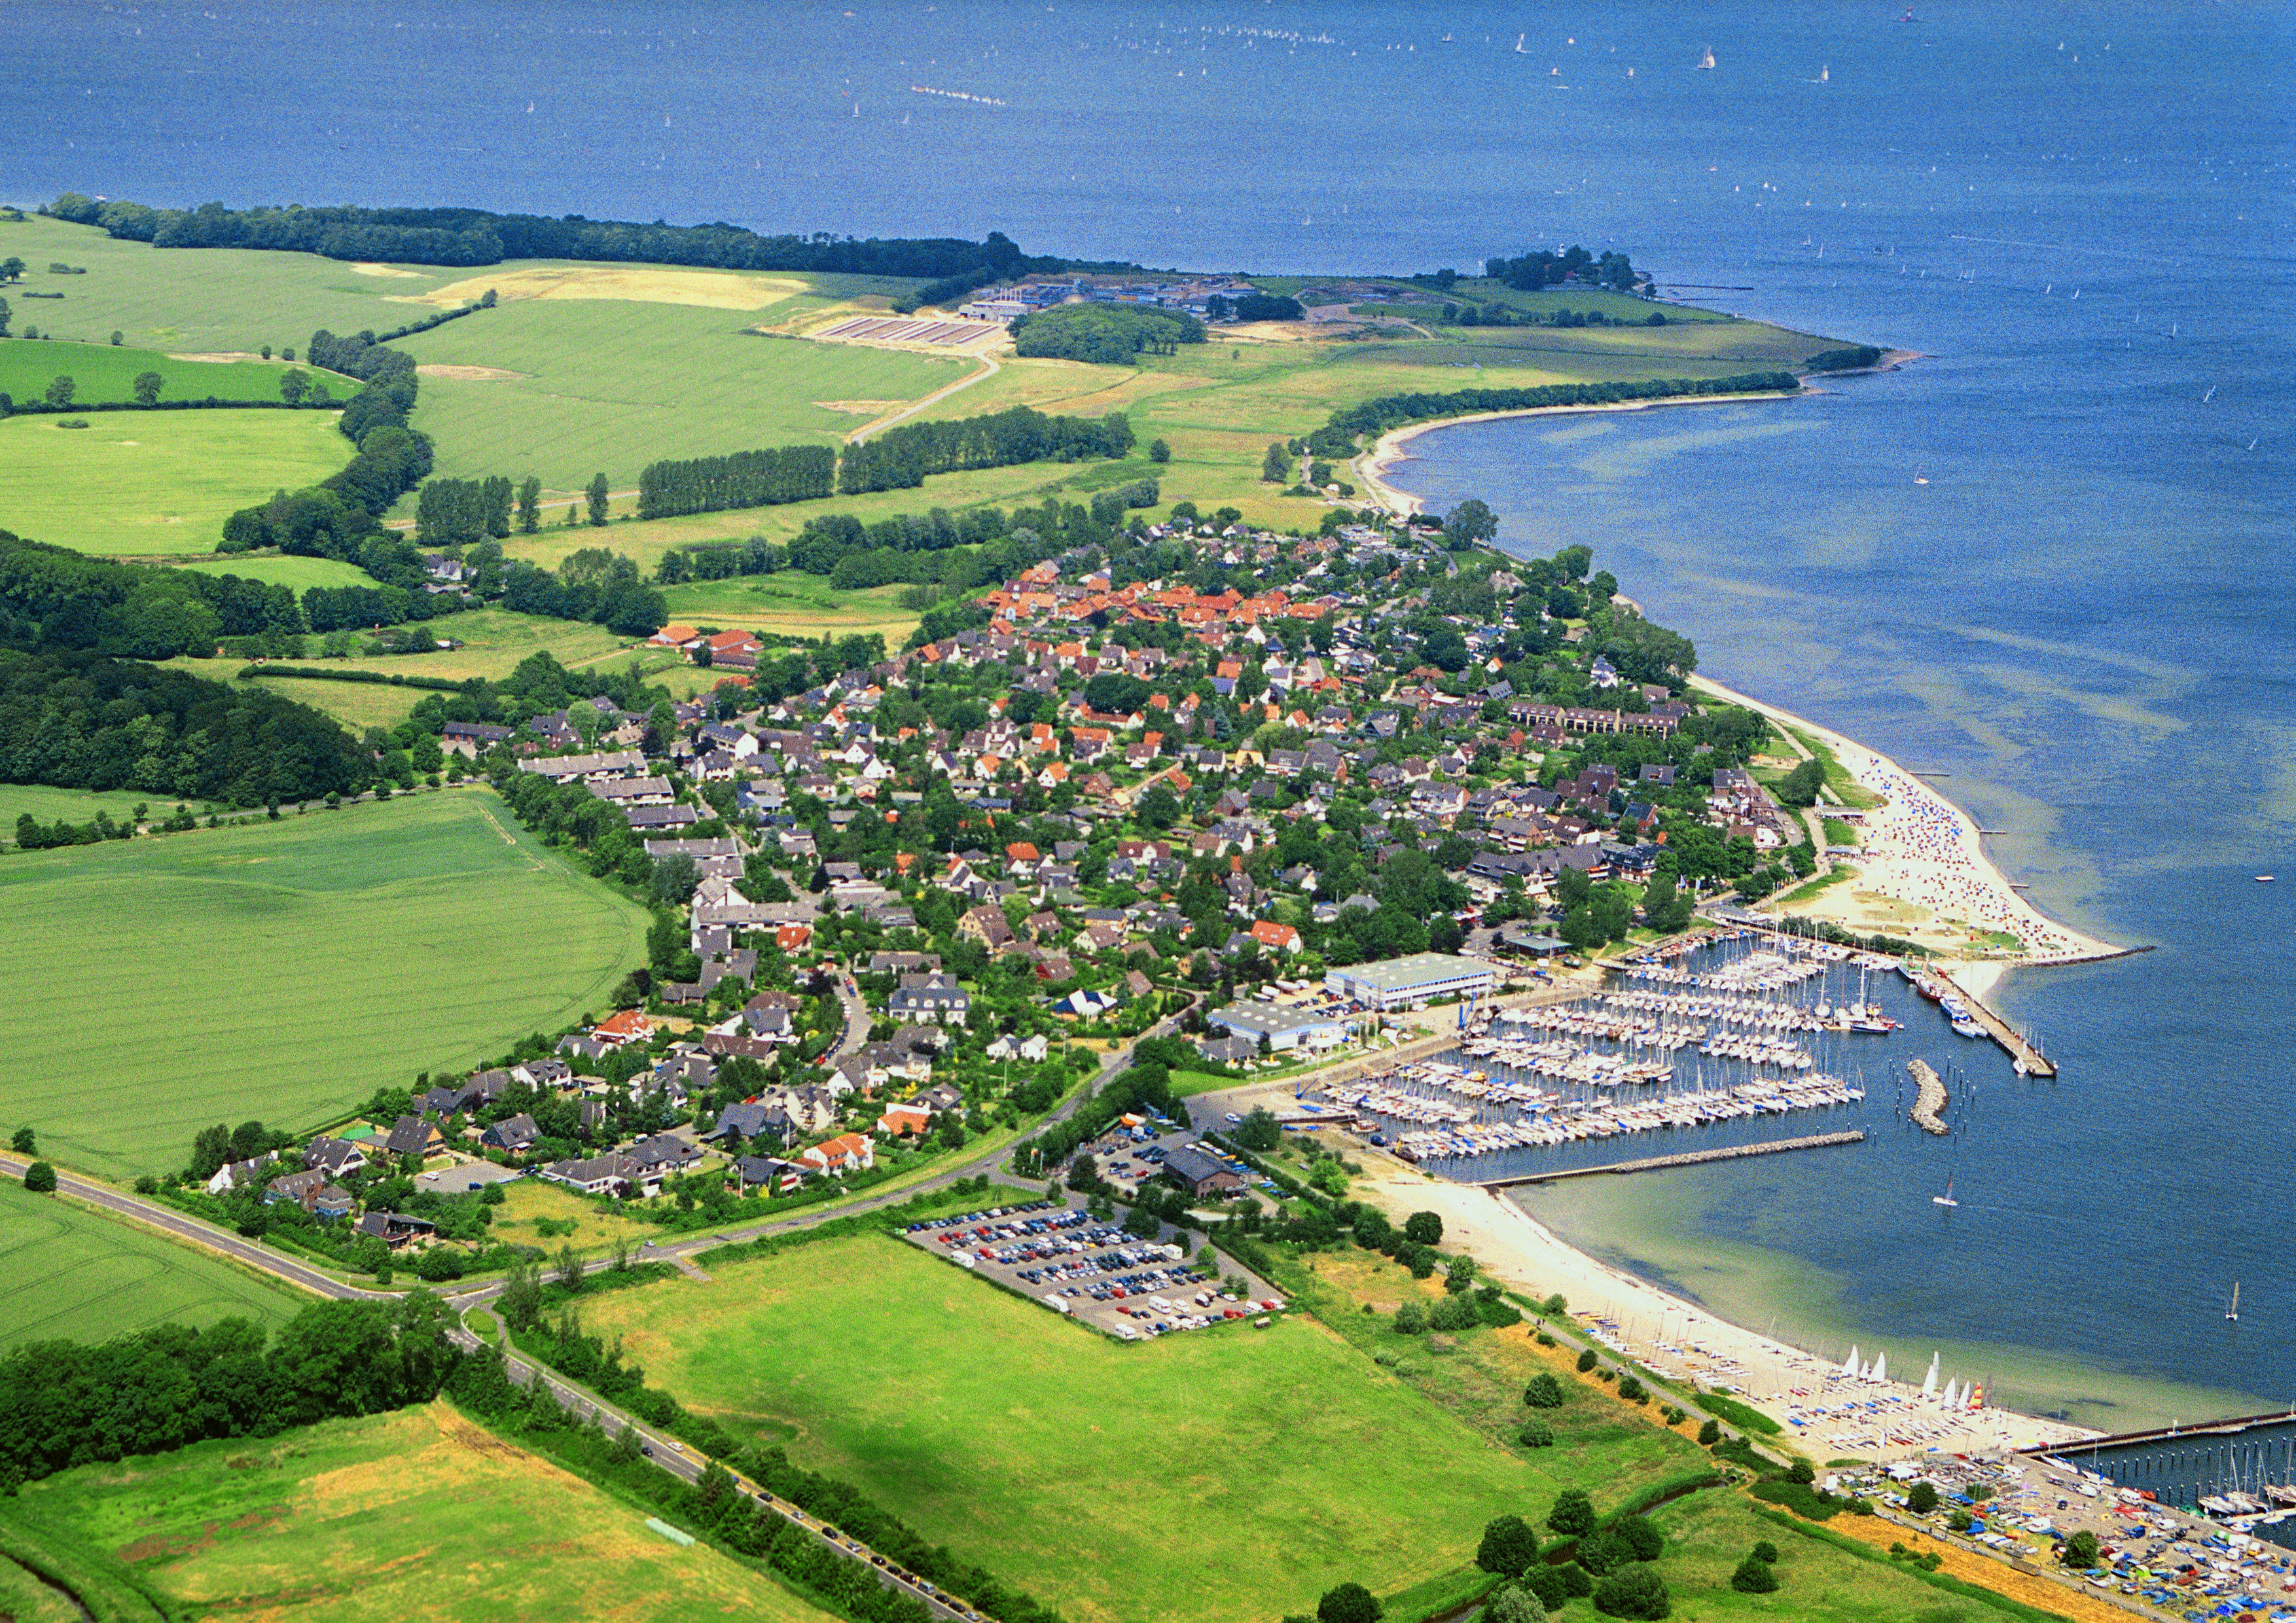 Luftbild vom Ostseebad Strande.